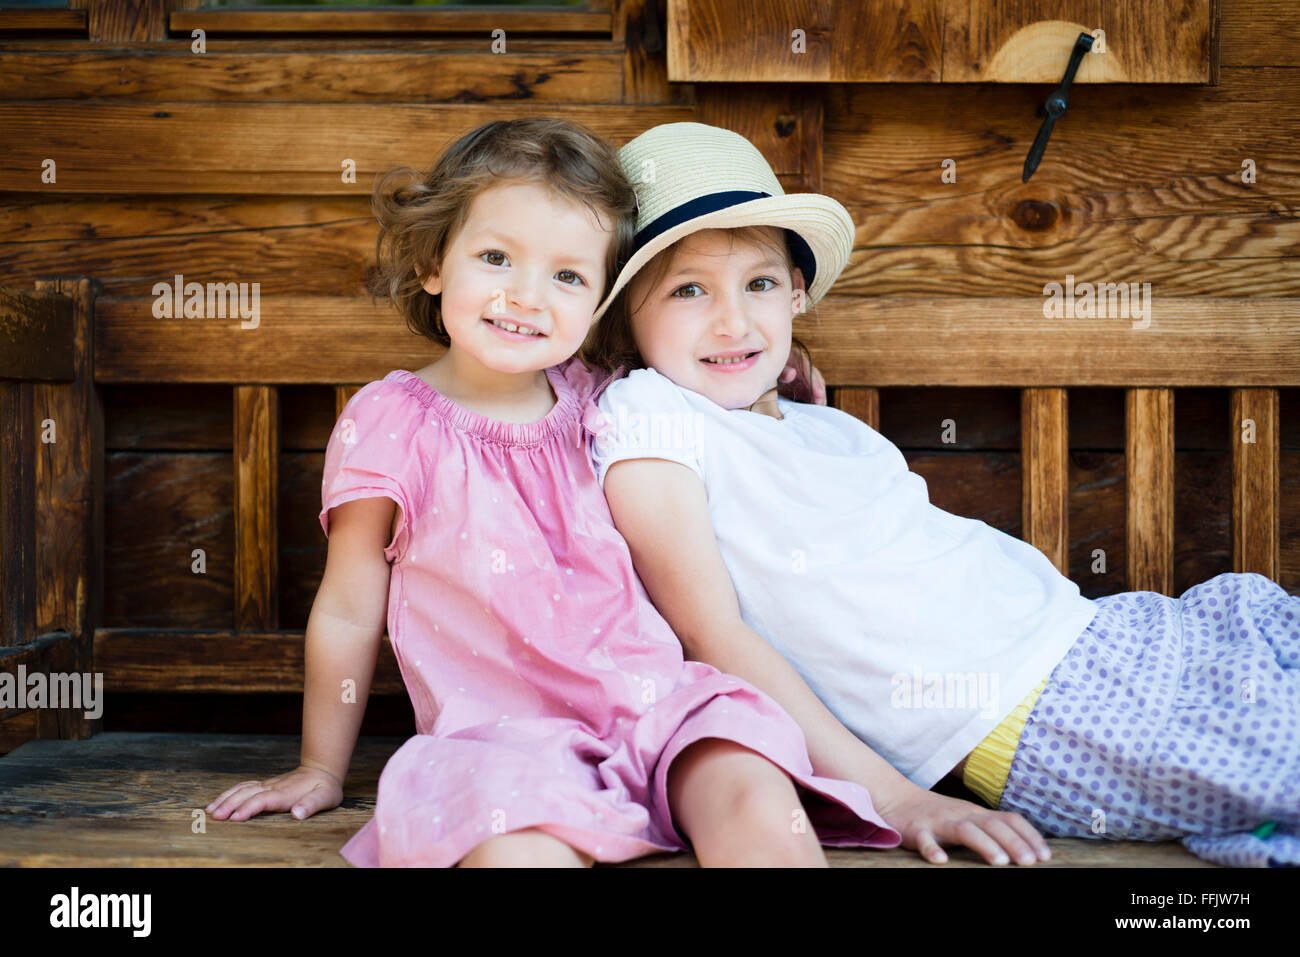 Porträt von zwei kleinen Mädchen auf Bank Stockfoto